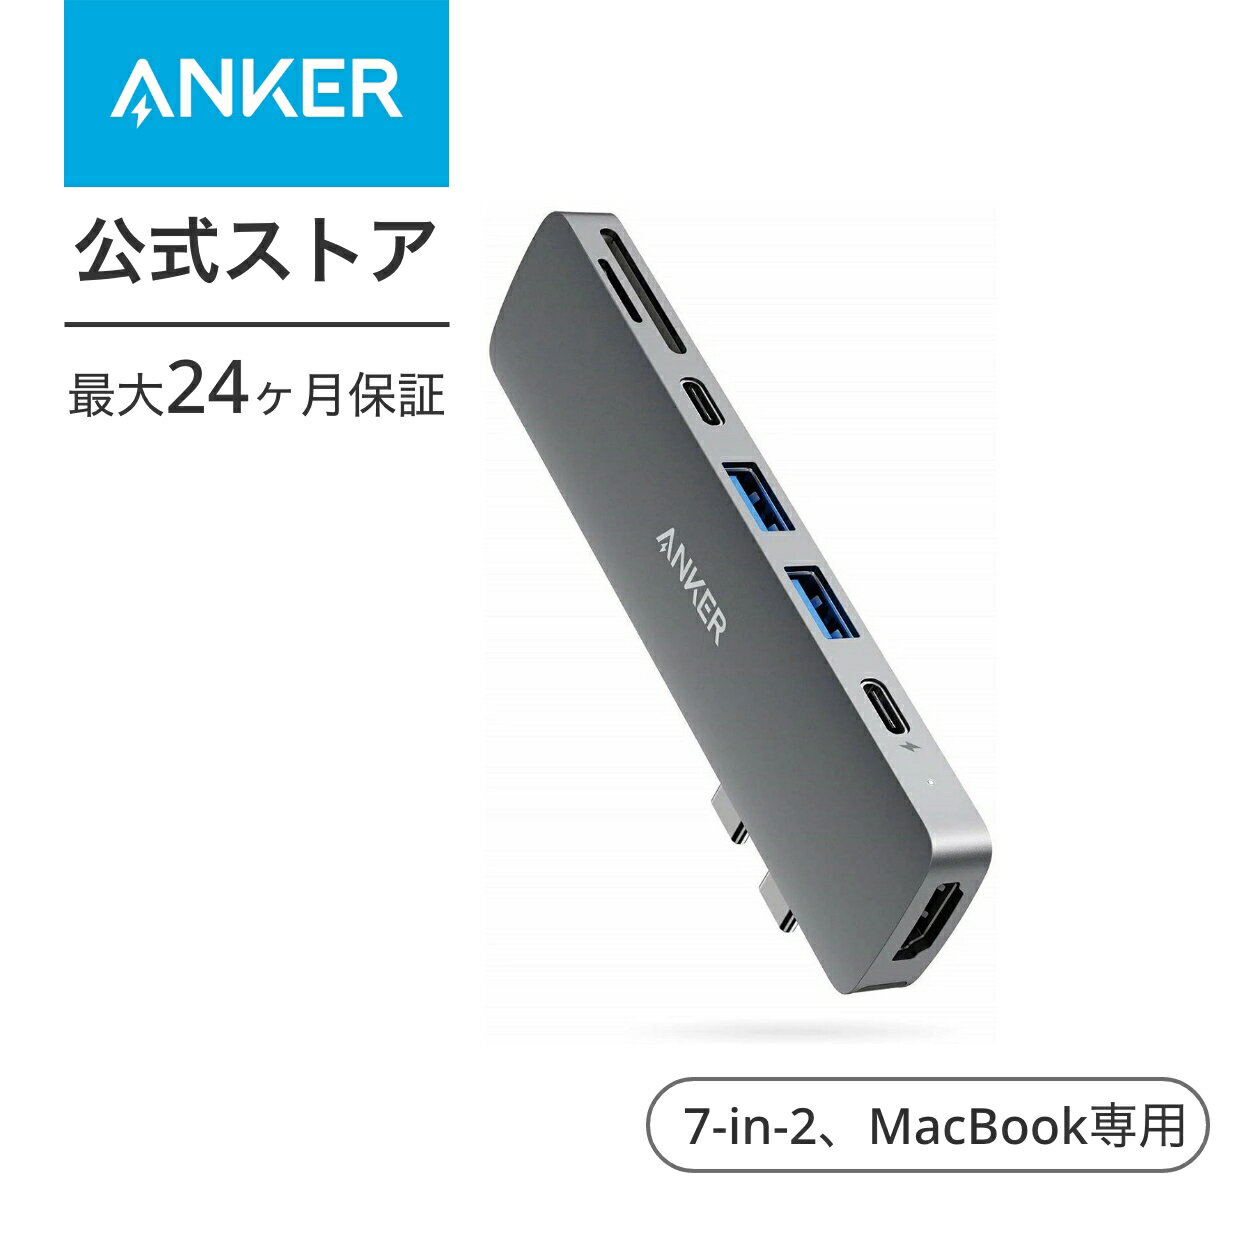 【1 700円OFF 6/11まで】Anker PowerExpand Direct 7-in-2 USB-C PD メディア ハブ 4K対応 HDMIポート 100W Power Delivery 対応 多機能USB-Cポート USB-A ポート microSD & SDカード スロット…